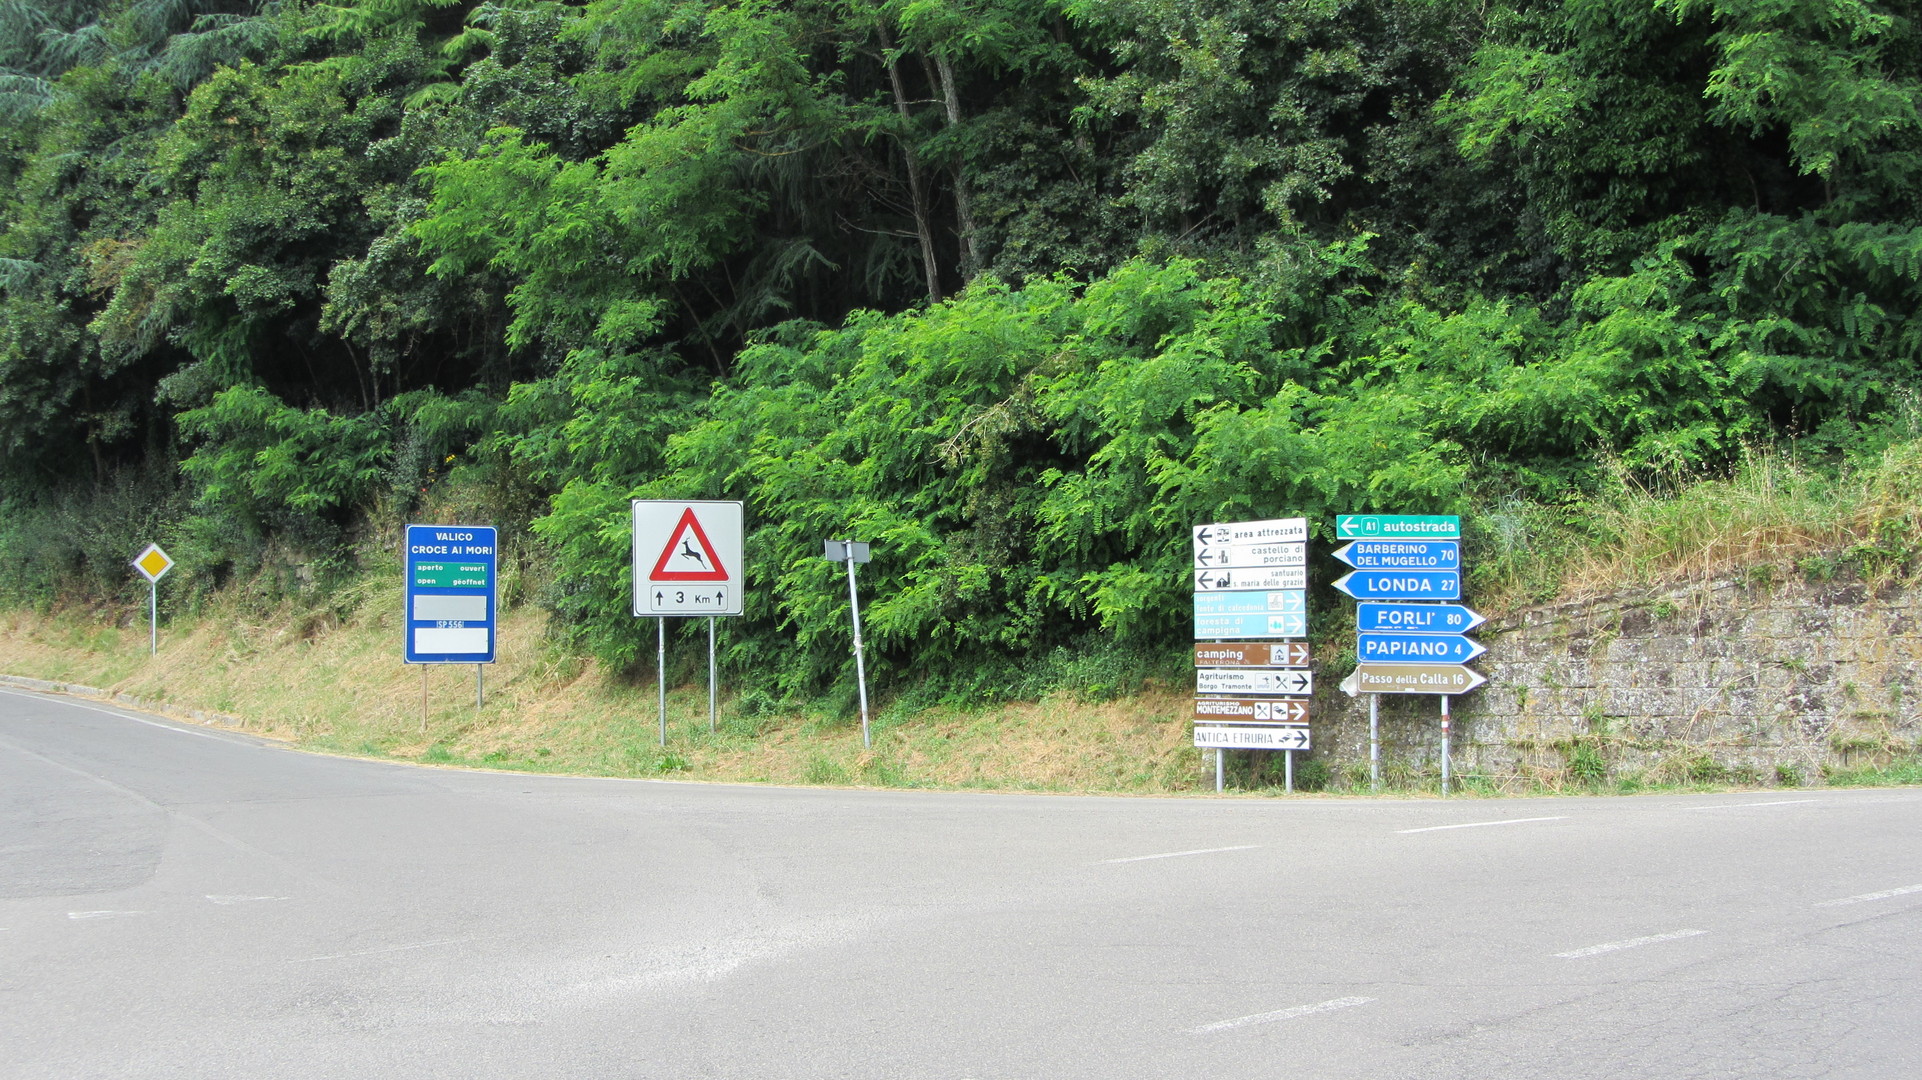 Südanfahrt: Der Beginn an einer Zwei-Paß-Kreuzung (links gehts zum Valico Croce a Mori).